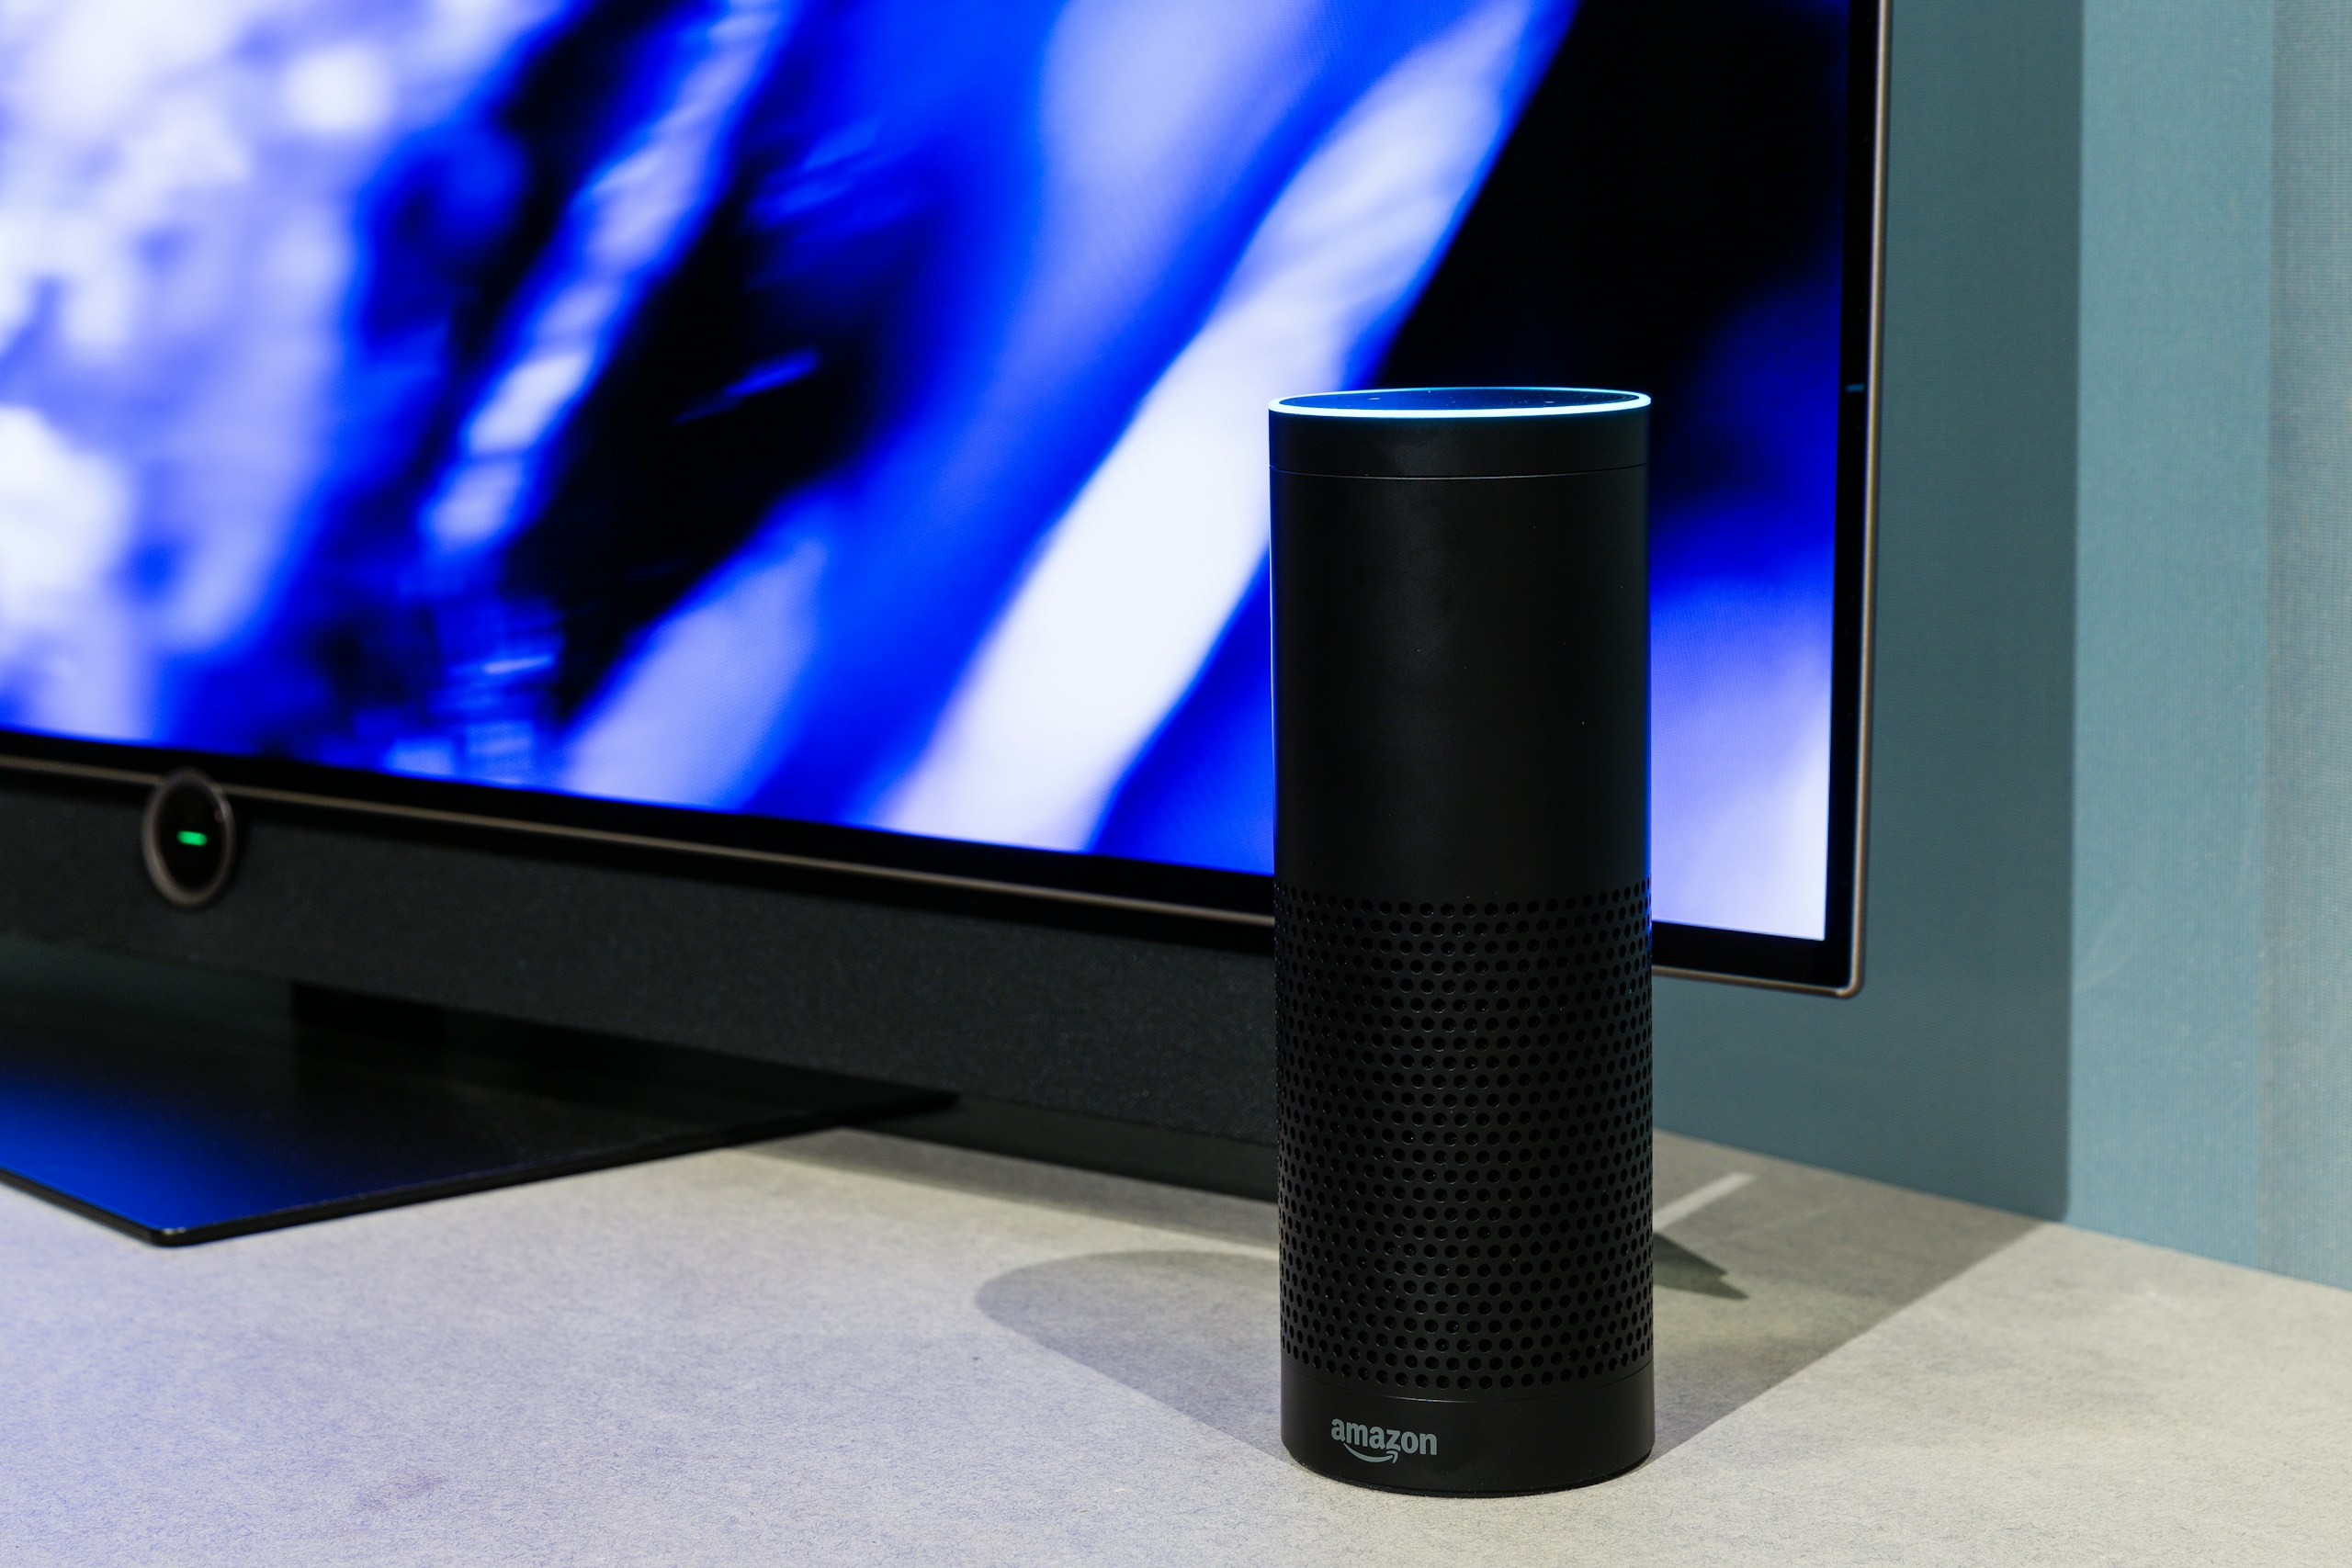 black amazon echo smart speaker near turned-on flat screen TV